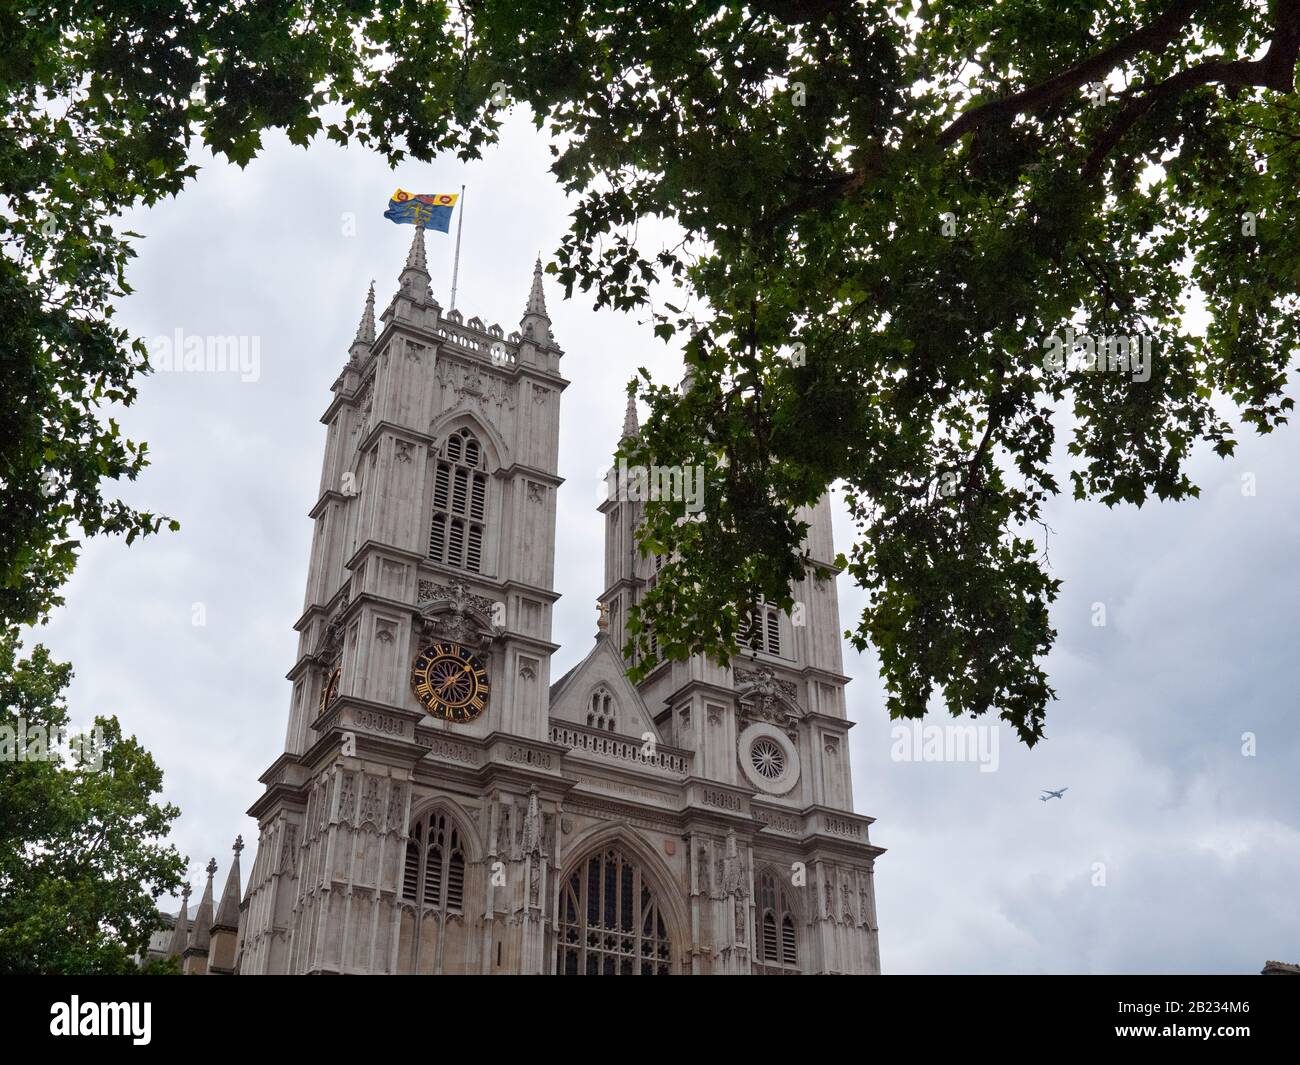 Les grandes tours jumelles et la façade occidentale de l'abbaye de Westminster. Westmister, Londres, Royaume-Uni Banque D'Images